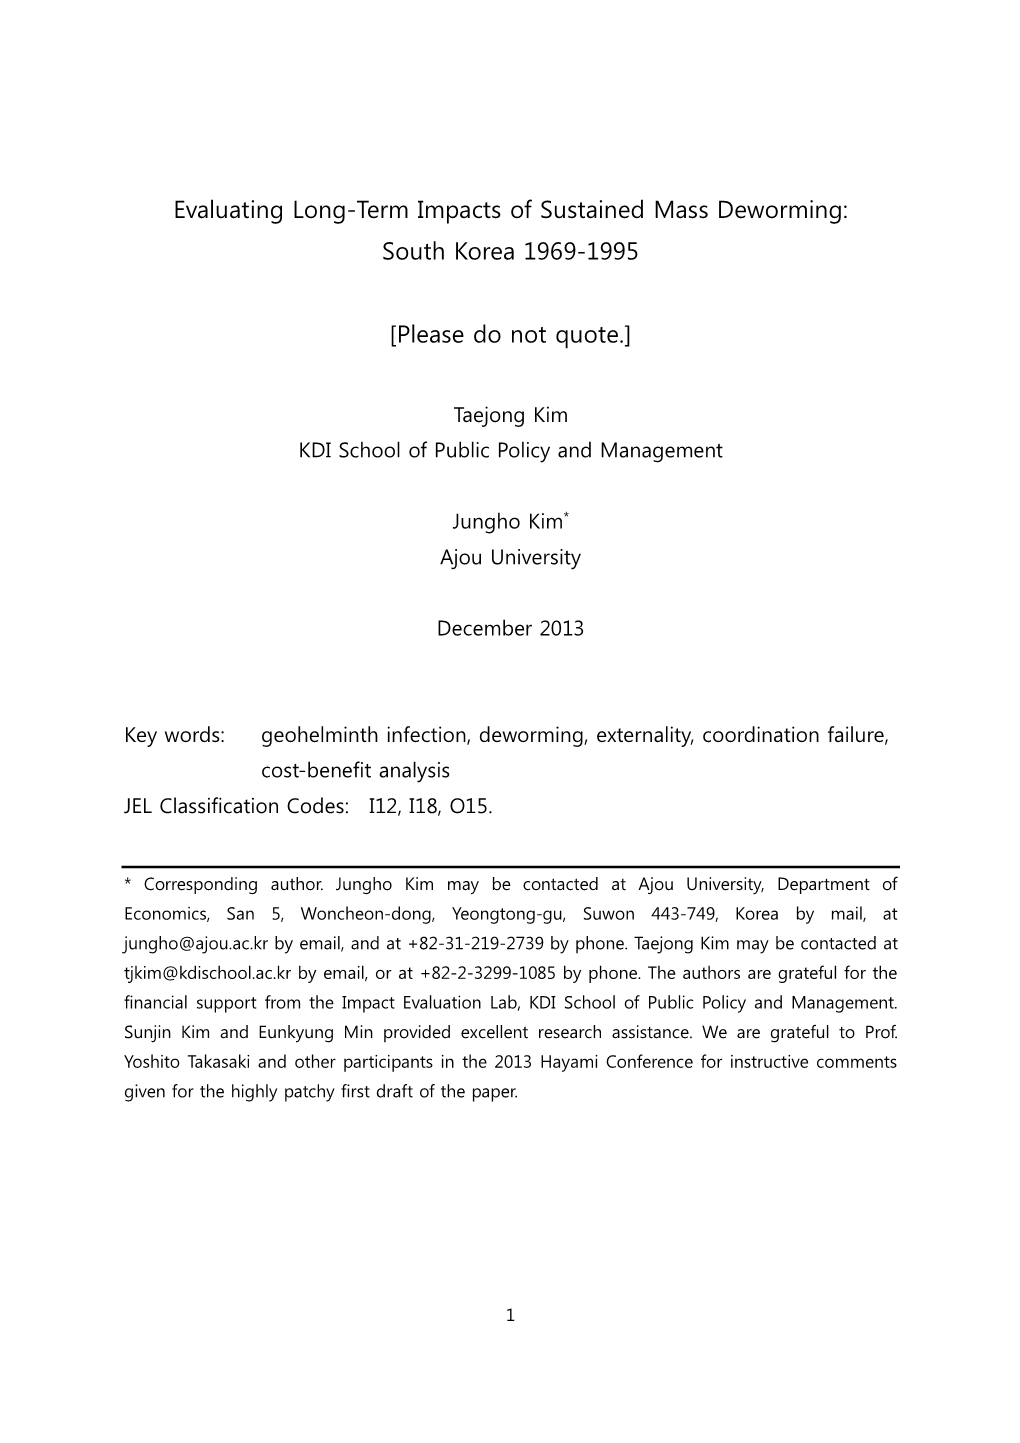 South Korea 1969-1995